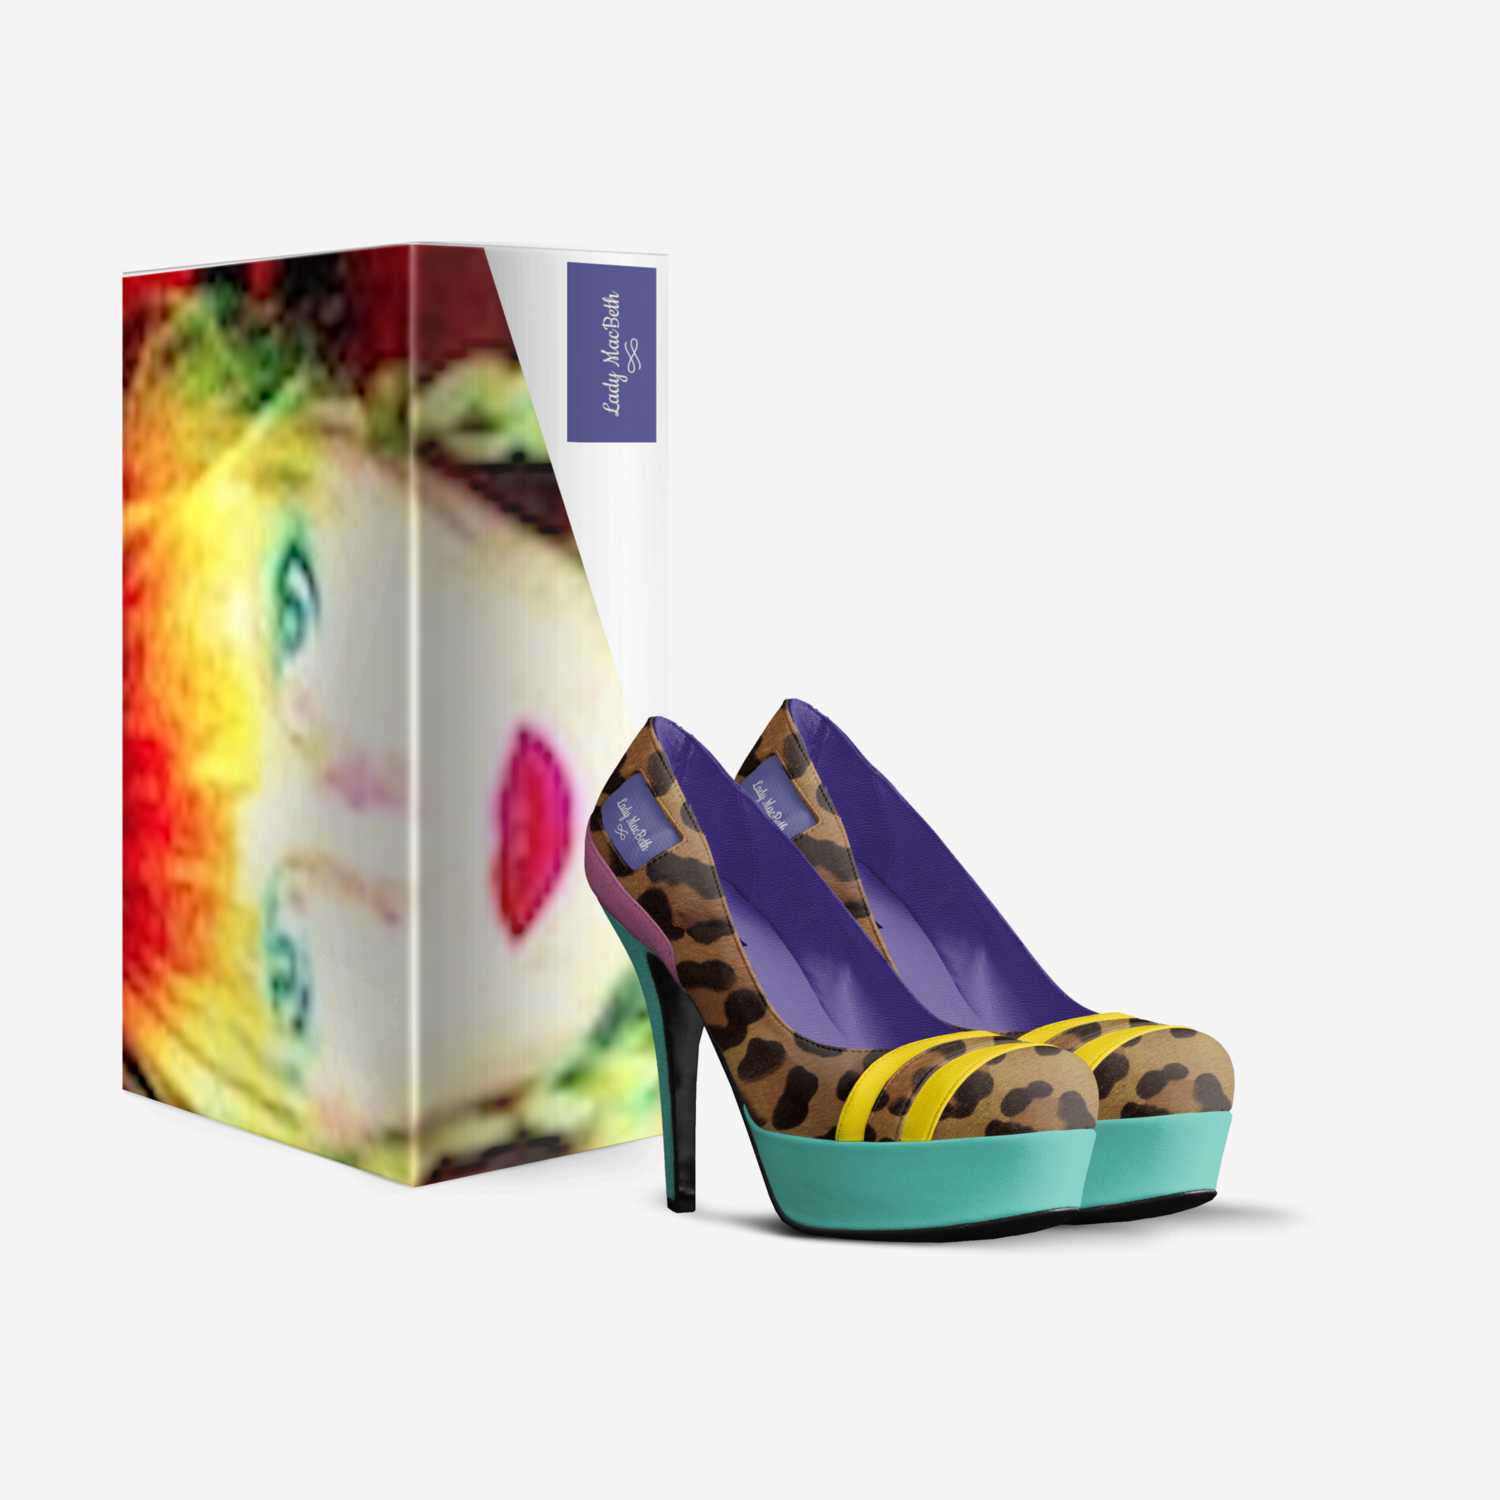 Lady MacBeth custom made in Italy shoes by Lauretta Macbeth | Box view